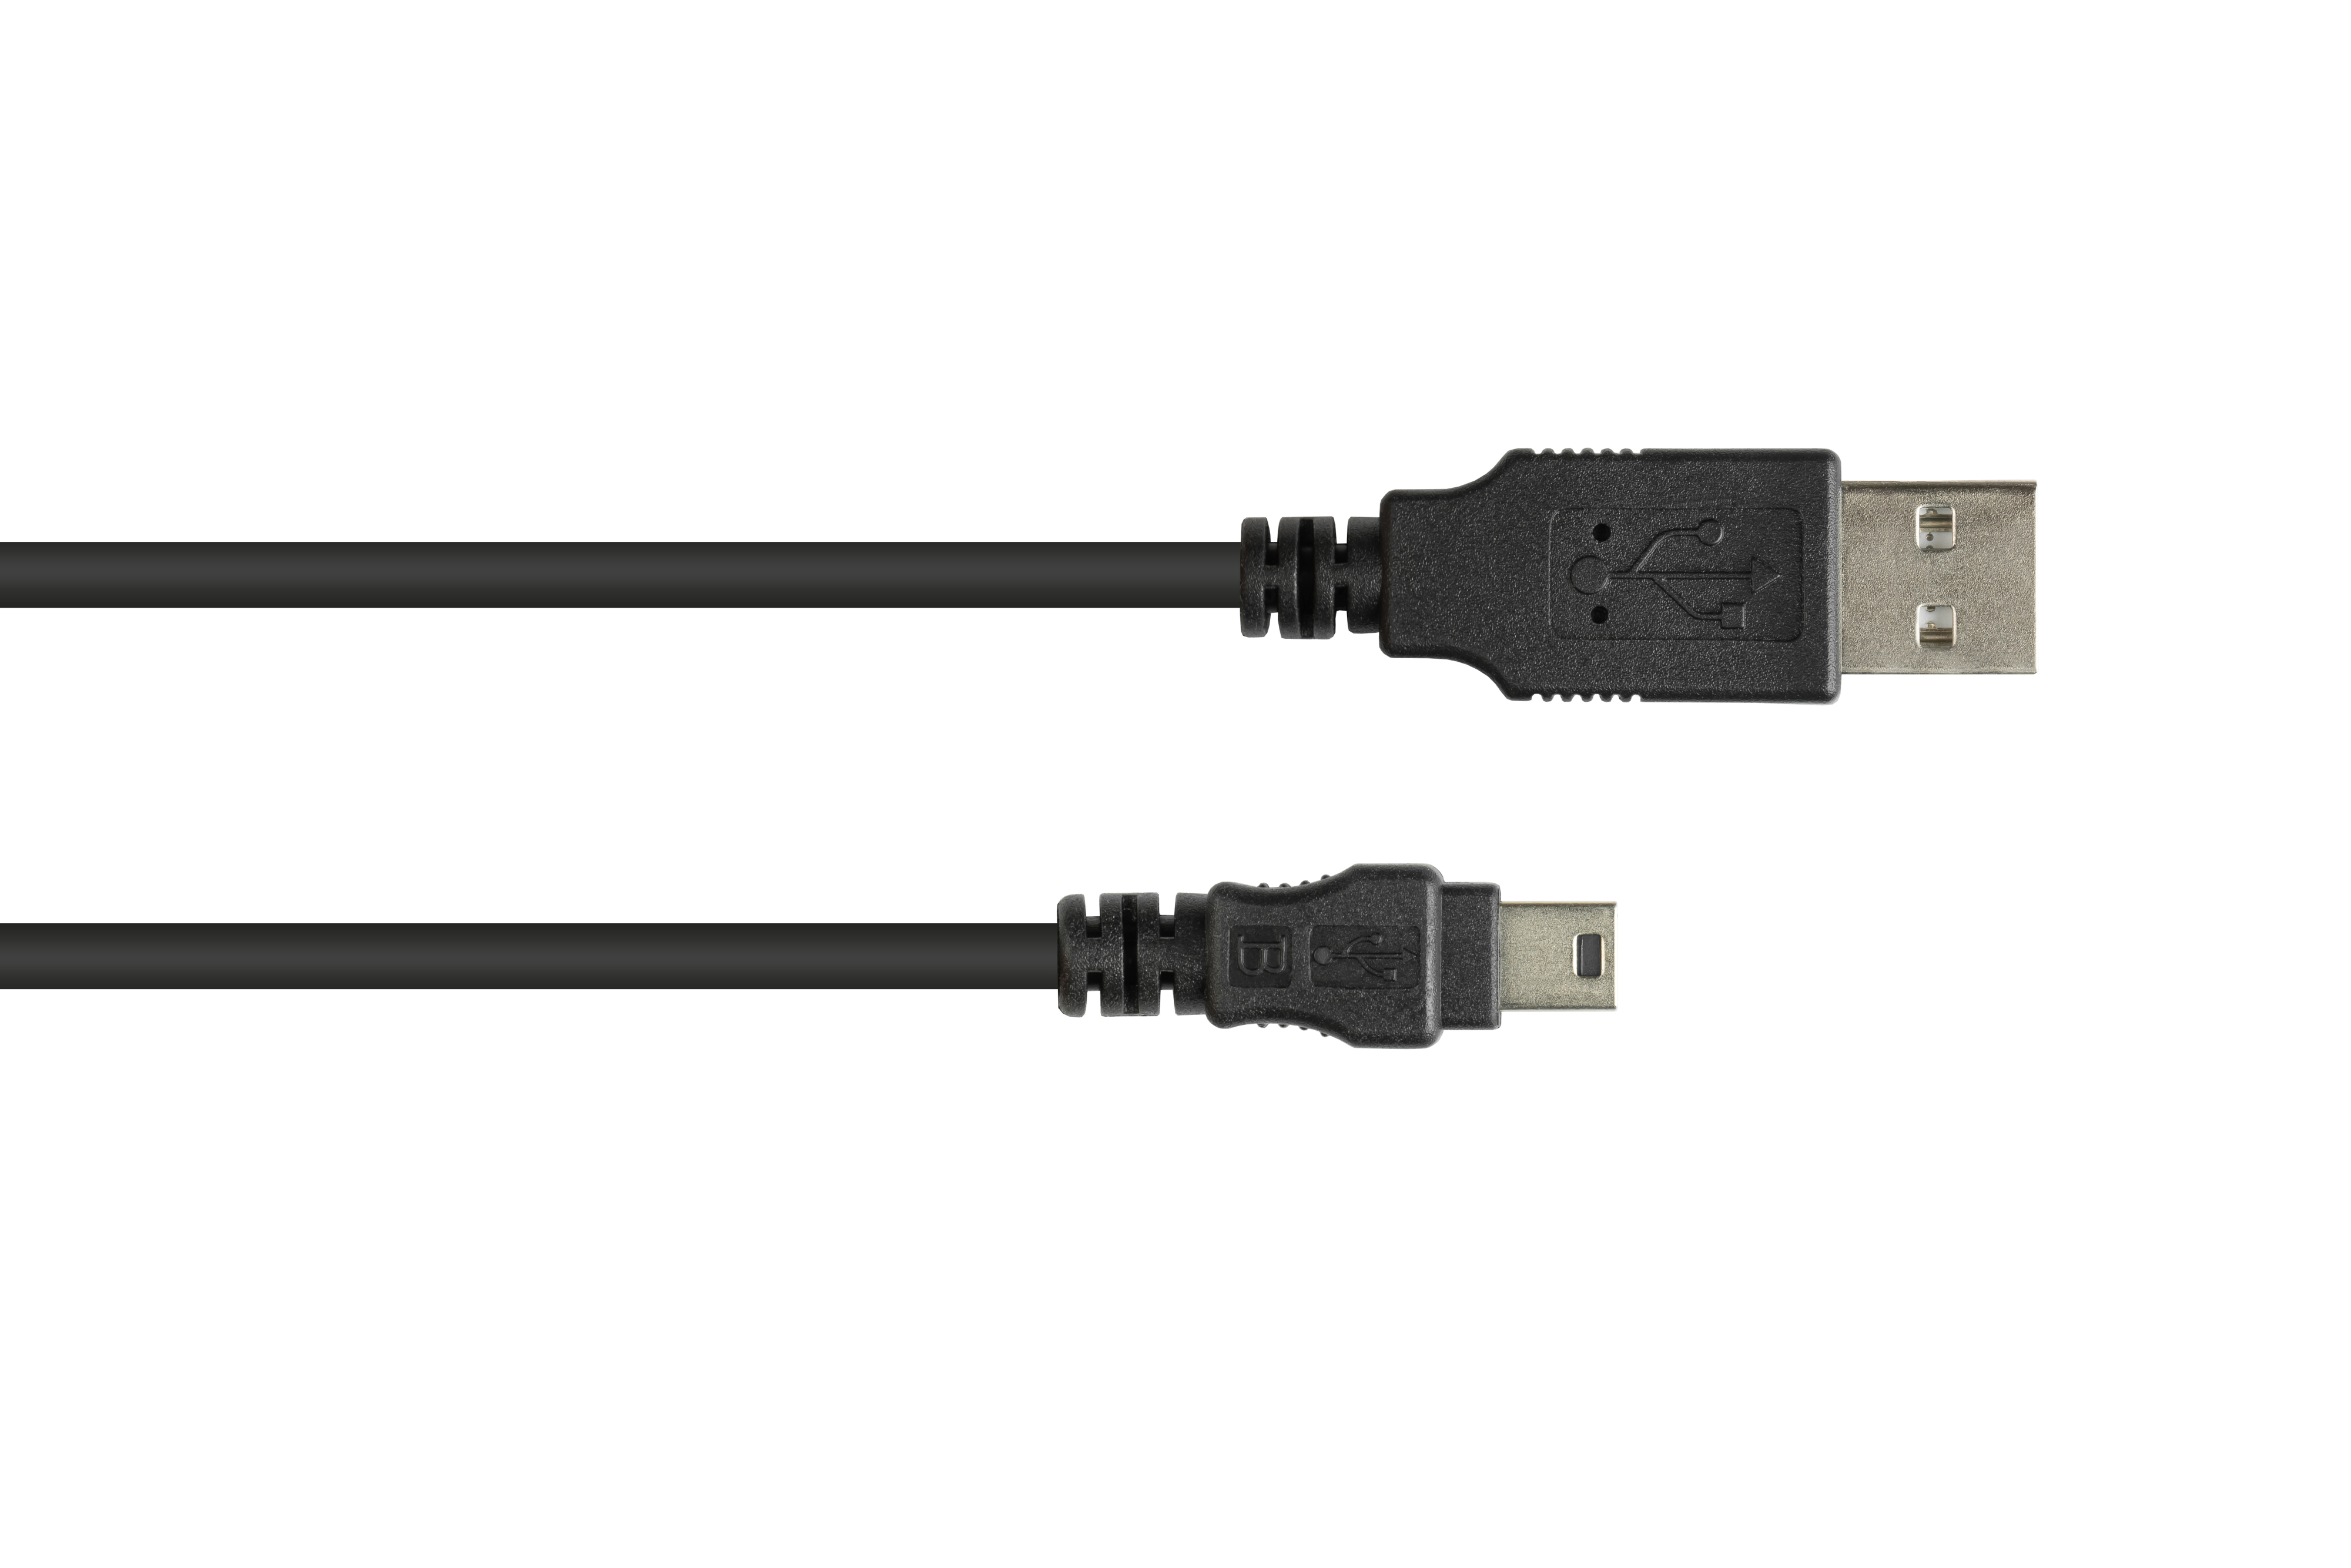 USB GOOD schwarz Stecker Mini B Stecker 5-pin, CONNECTIONS an A Anschlusskabel 2.0